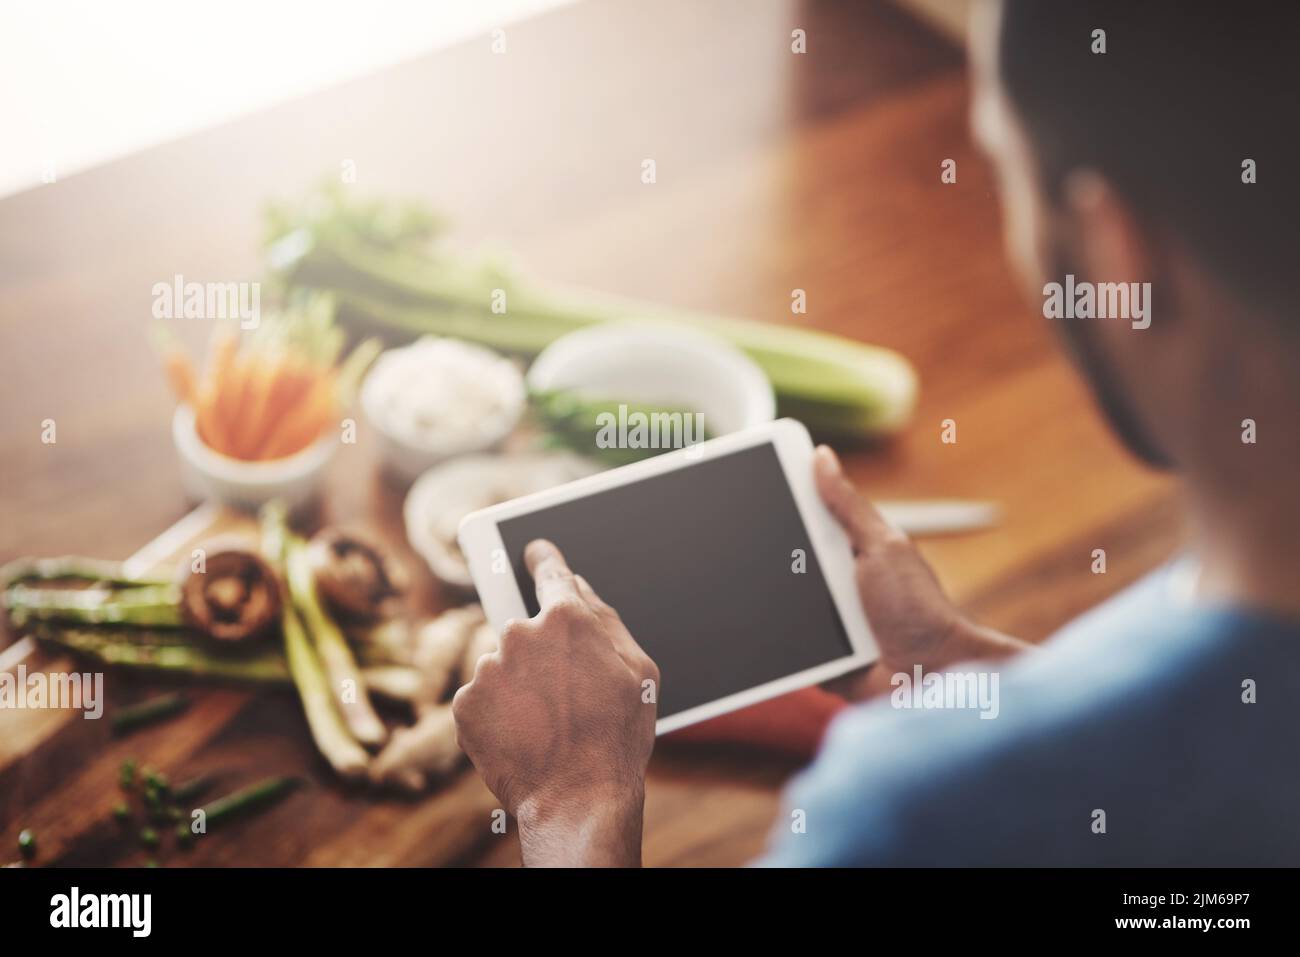 Gros plan des mains de l'homme tenant une tablette pour rechercher une recette, faire des recherches ou chercher des ingrédients tout en cuisinant le dîner, le déjeuner ou le petit déjeuner. Défilement Banque D'Images